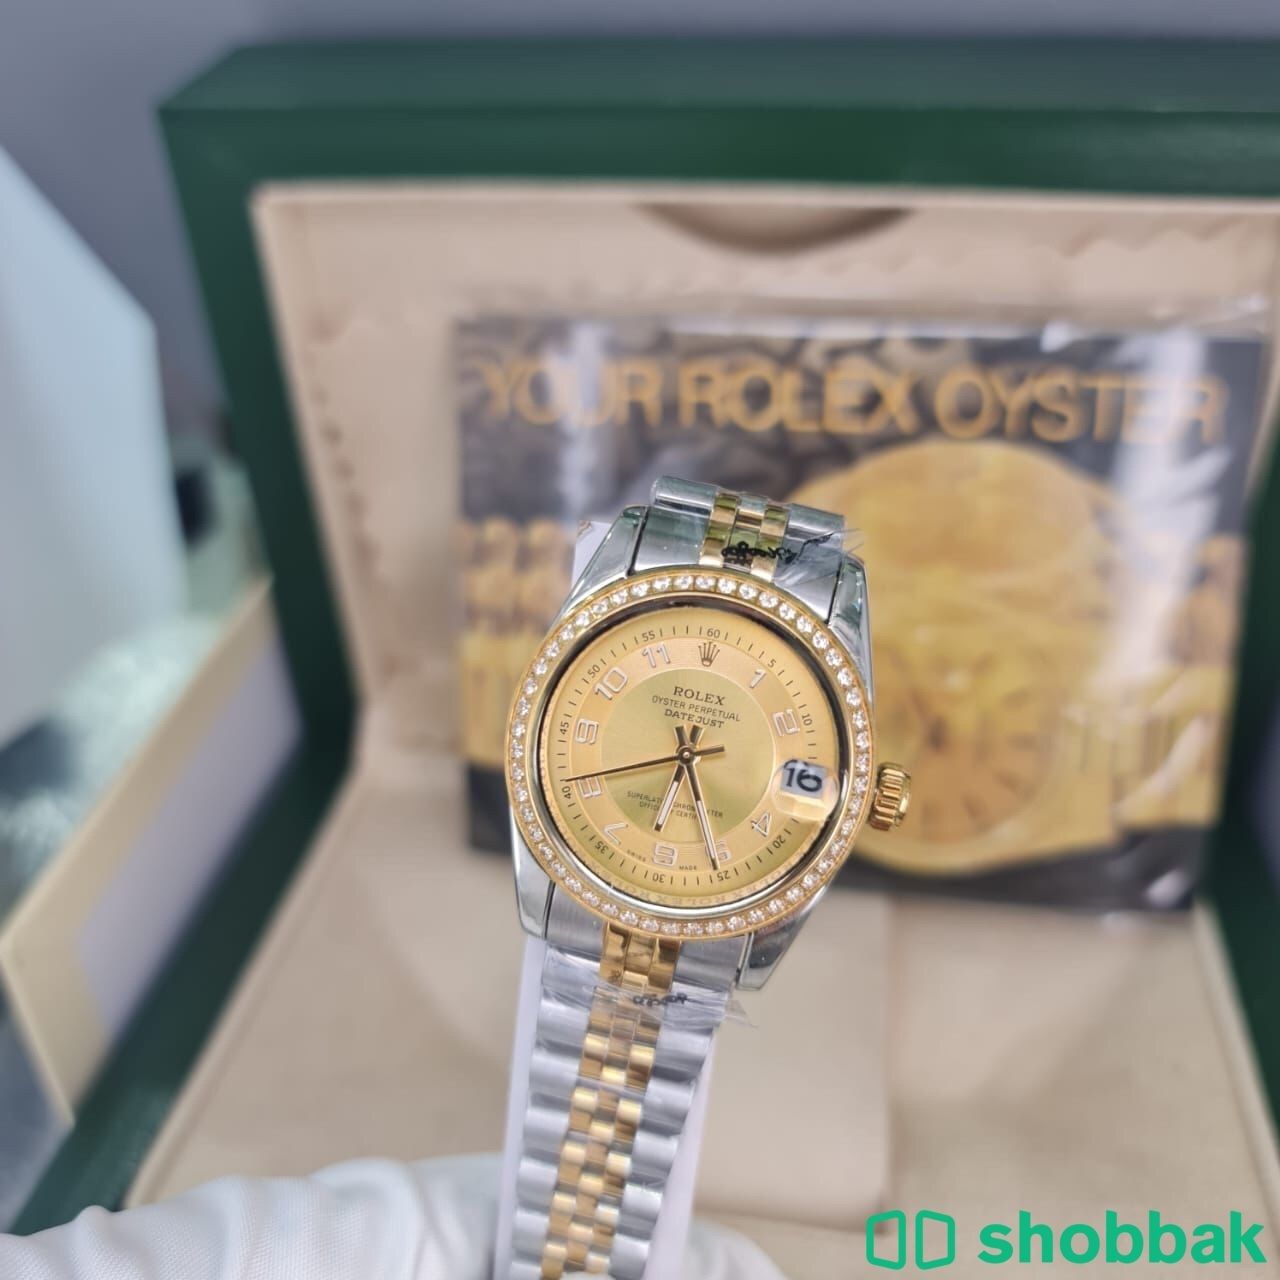 بوكس رجالي ونسائي ساعات رولكس السعر ٢٢٠ريال Shobbak Saudi Arabia